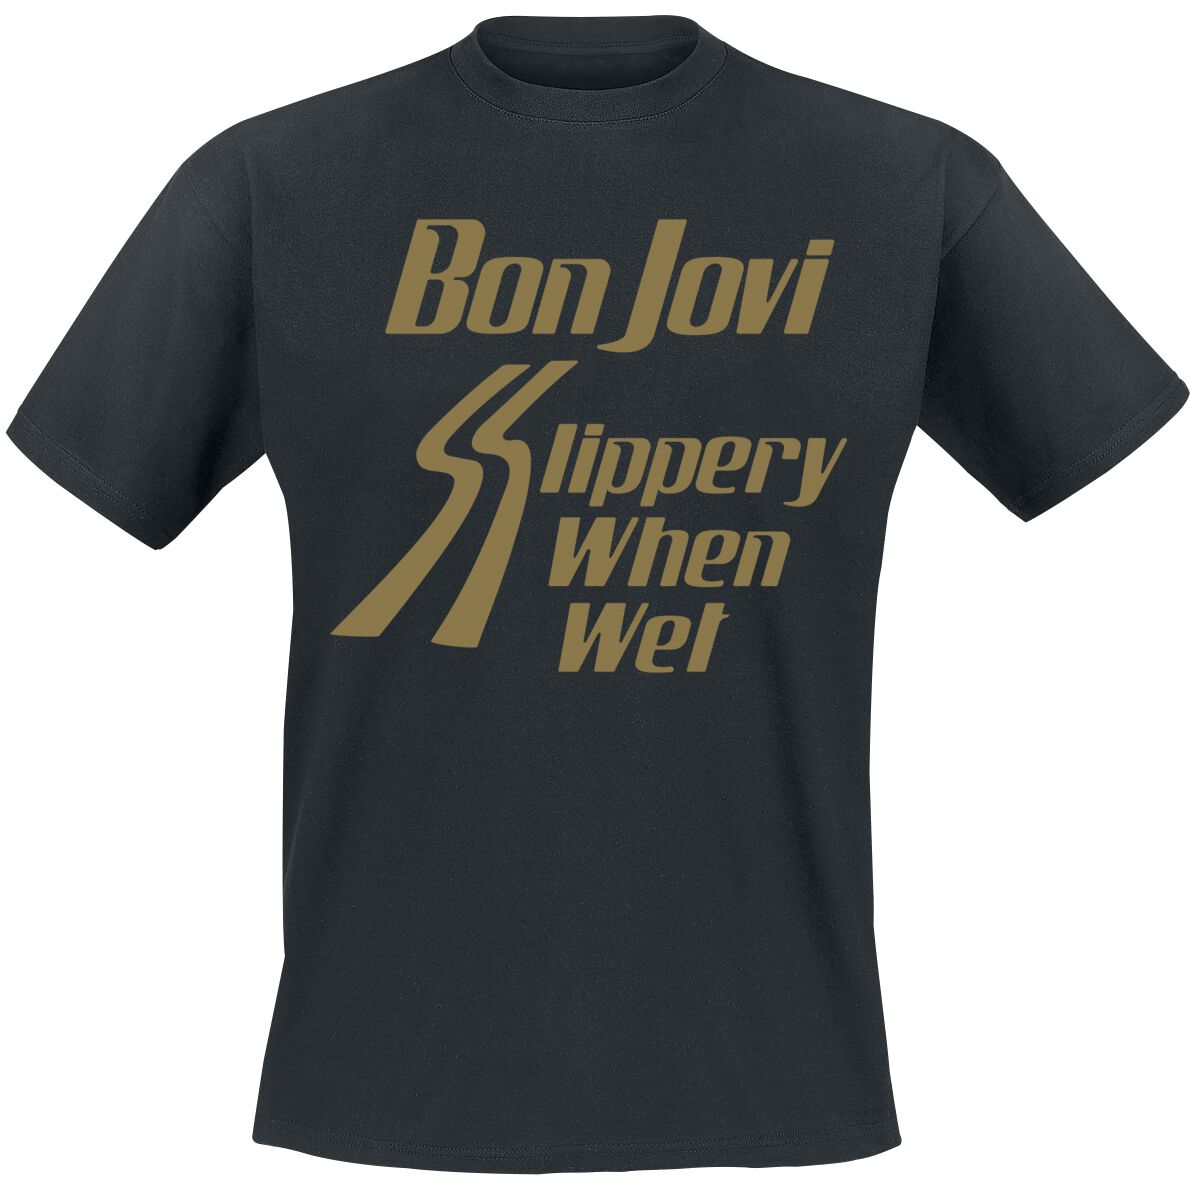 bon jovi t-shirt - slippery when wet - s bis 3xl - fÃ¼r mÃ¤nner - grÃ¶ÃŸe s - - lizenziertes merchandise! schwarz